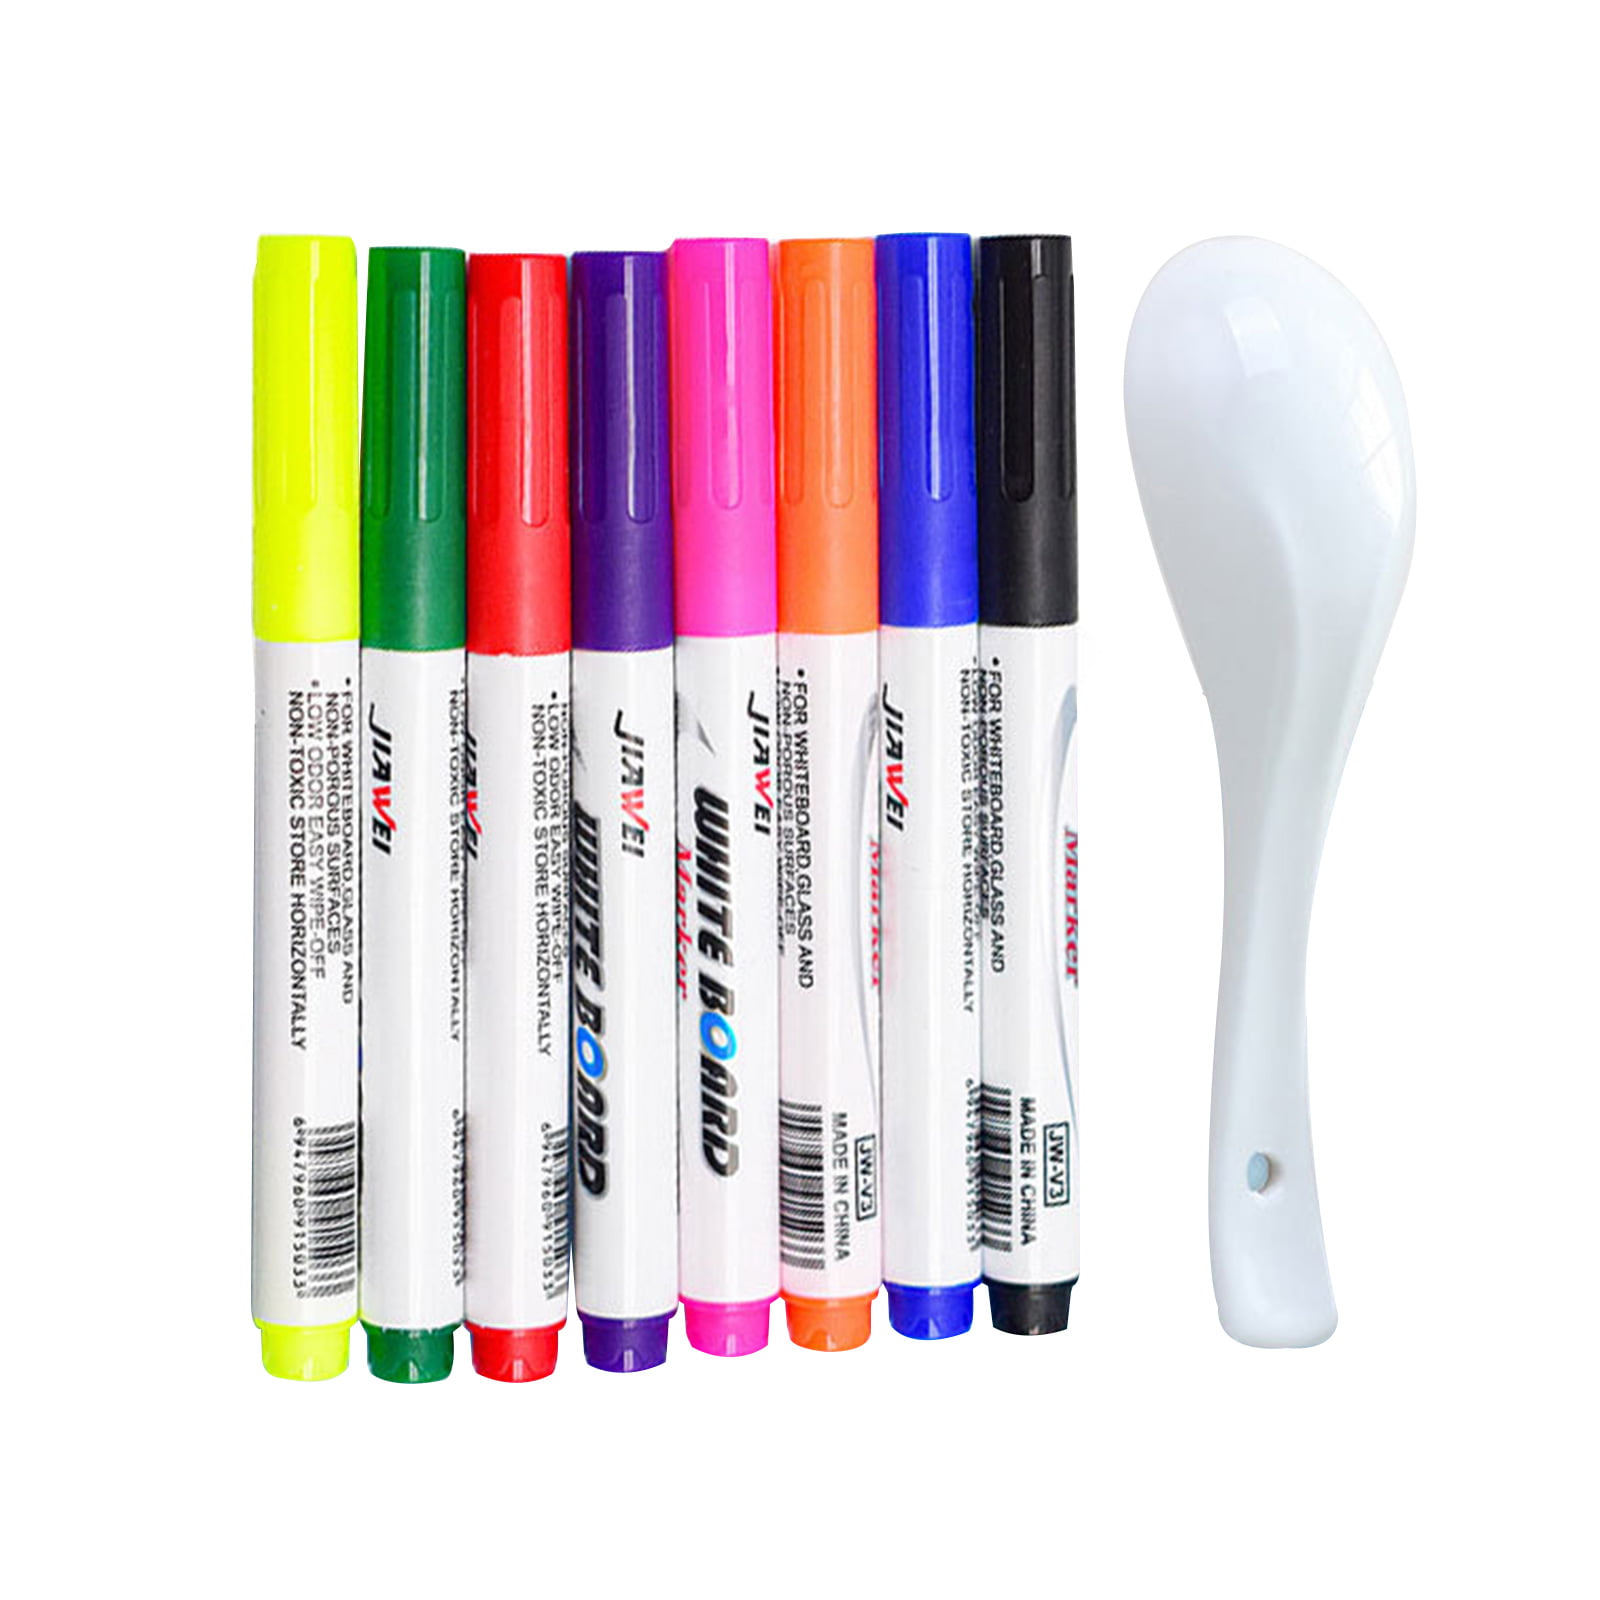 Diy White Pen/Homemade Diy White Pen/How to make white Pen at home/white  Pen making/White ink/Refill 